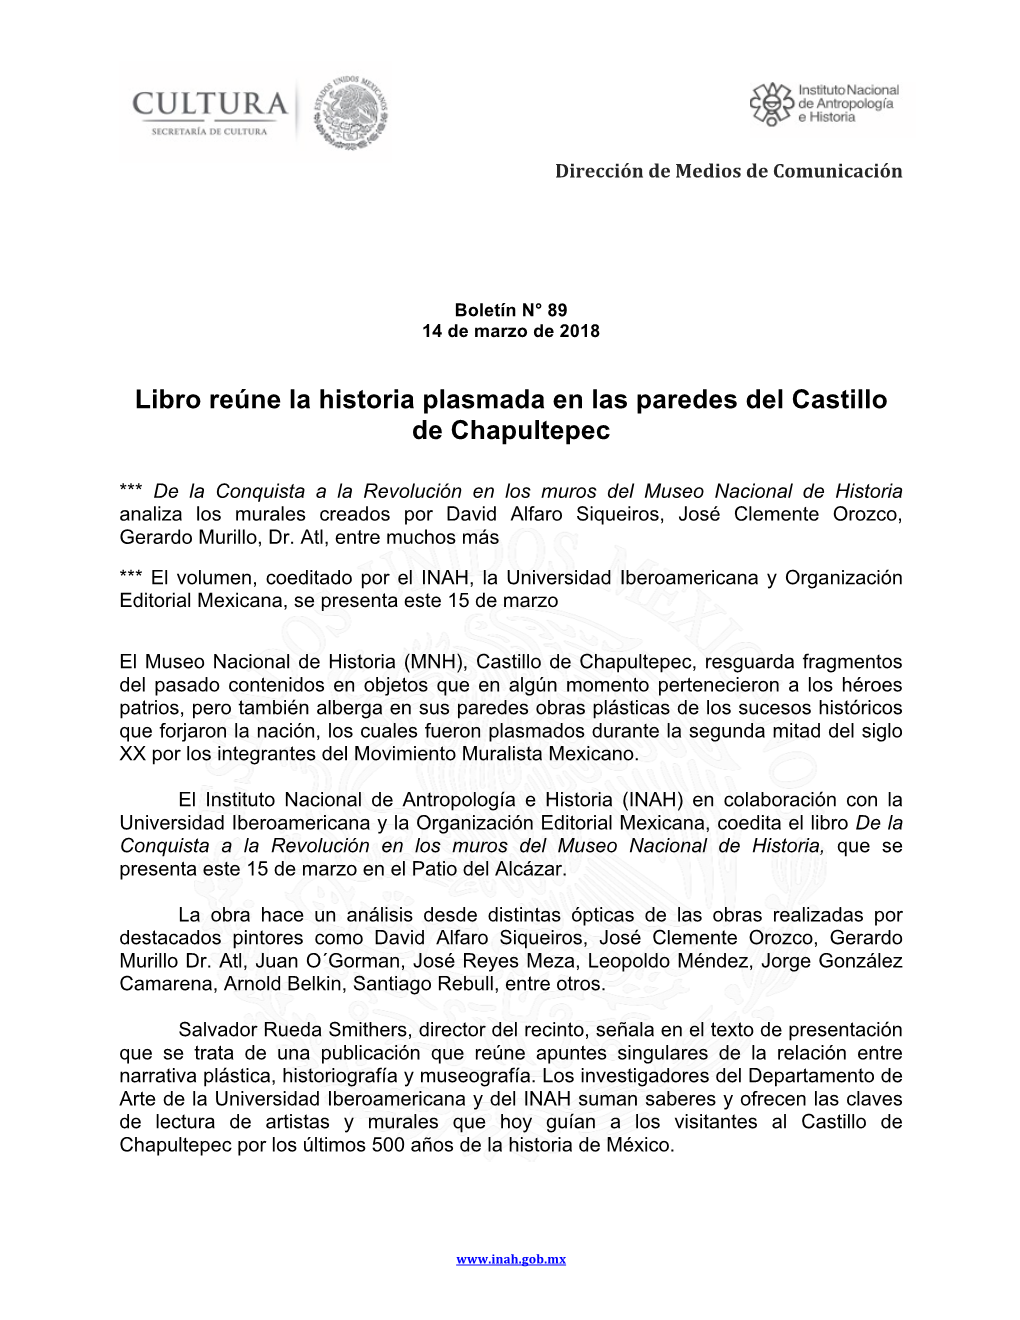 Libro Reúne La Historia Plasmada En Las Paredes Del Castillo De Chapultepec